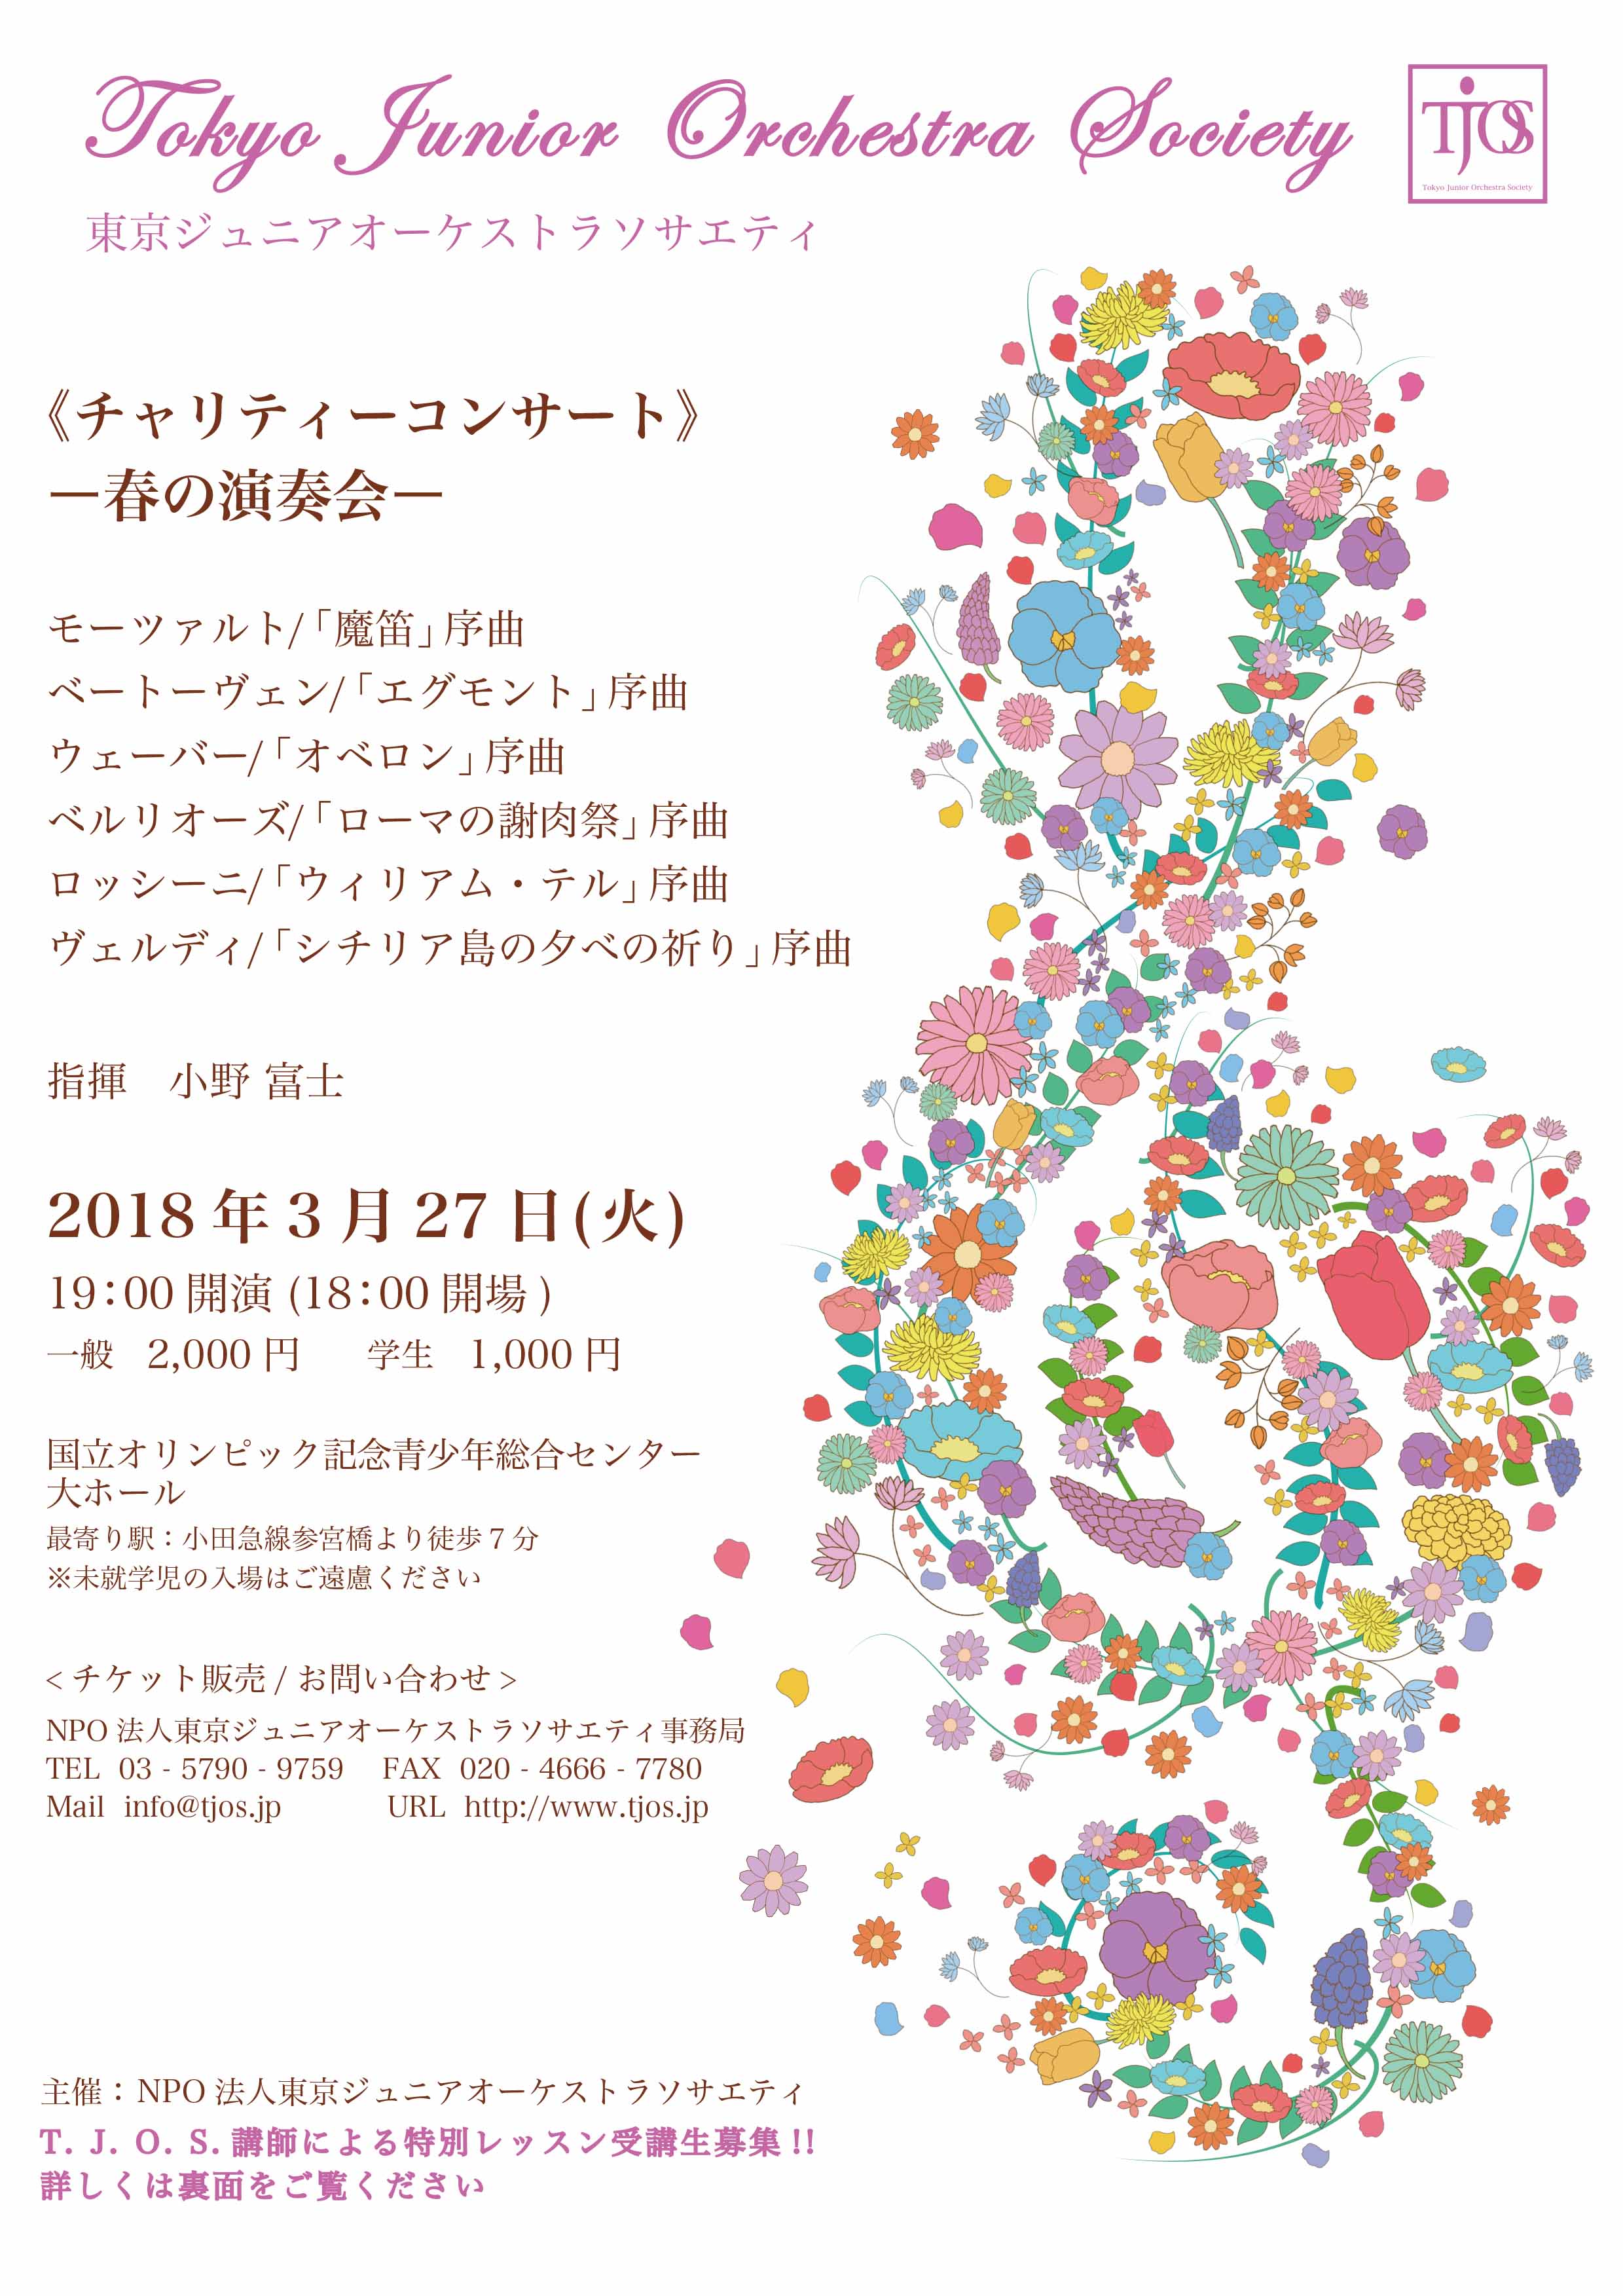 東京ジュニアオーケストラソサエティ演奏会チラシ画像